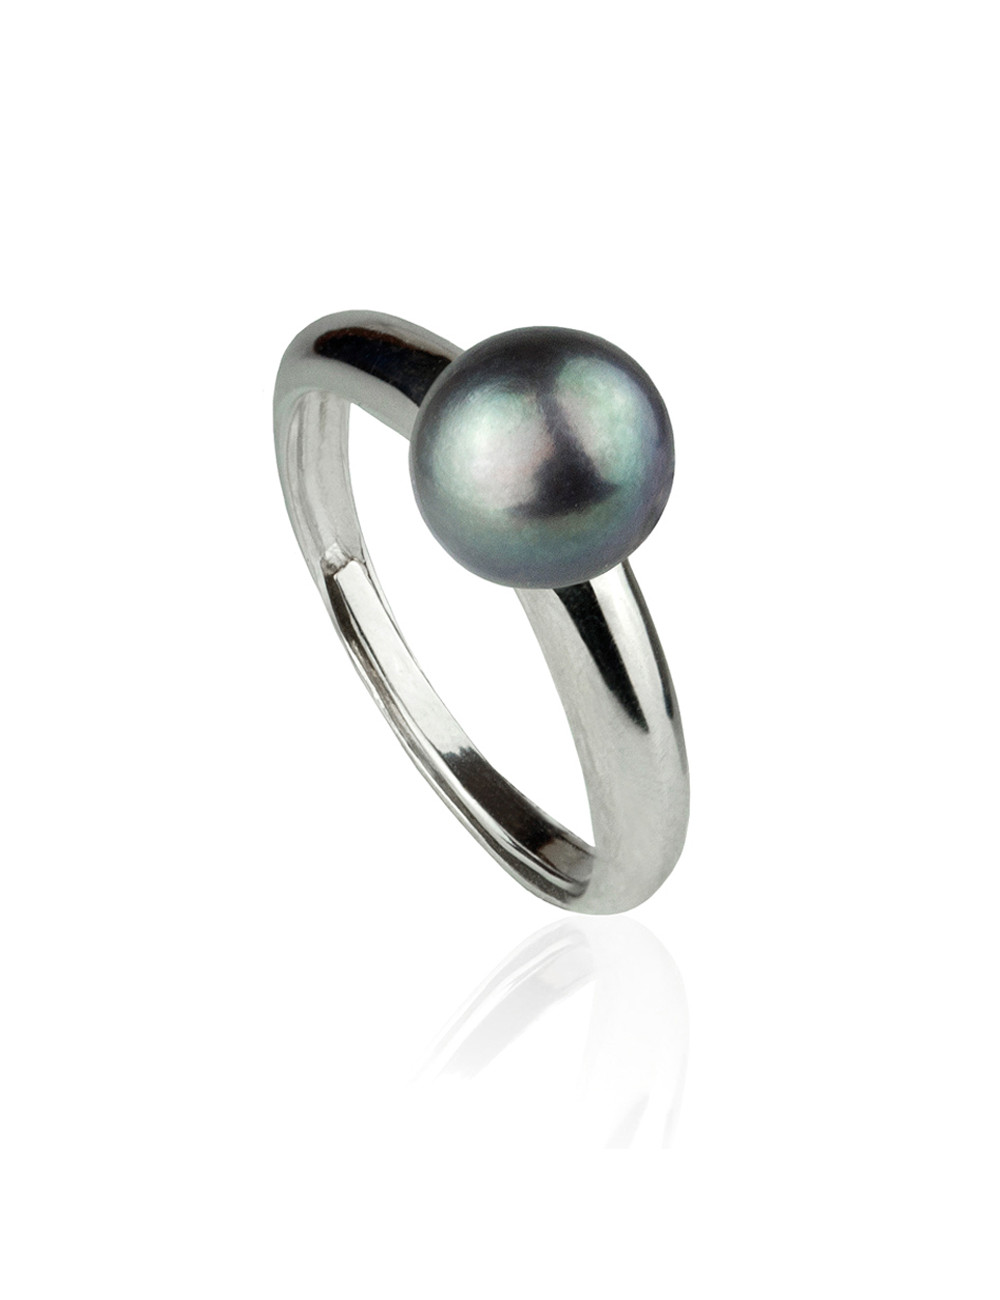 Srebrny, prosty pierścionek z 3/4 okrągłą, ciemną perłą R7080RS